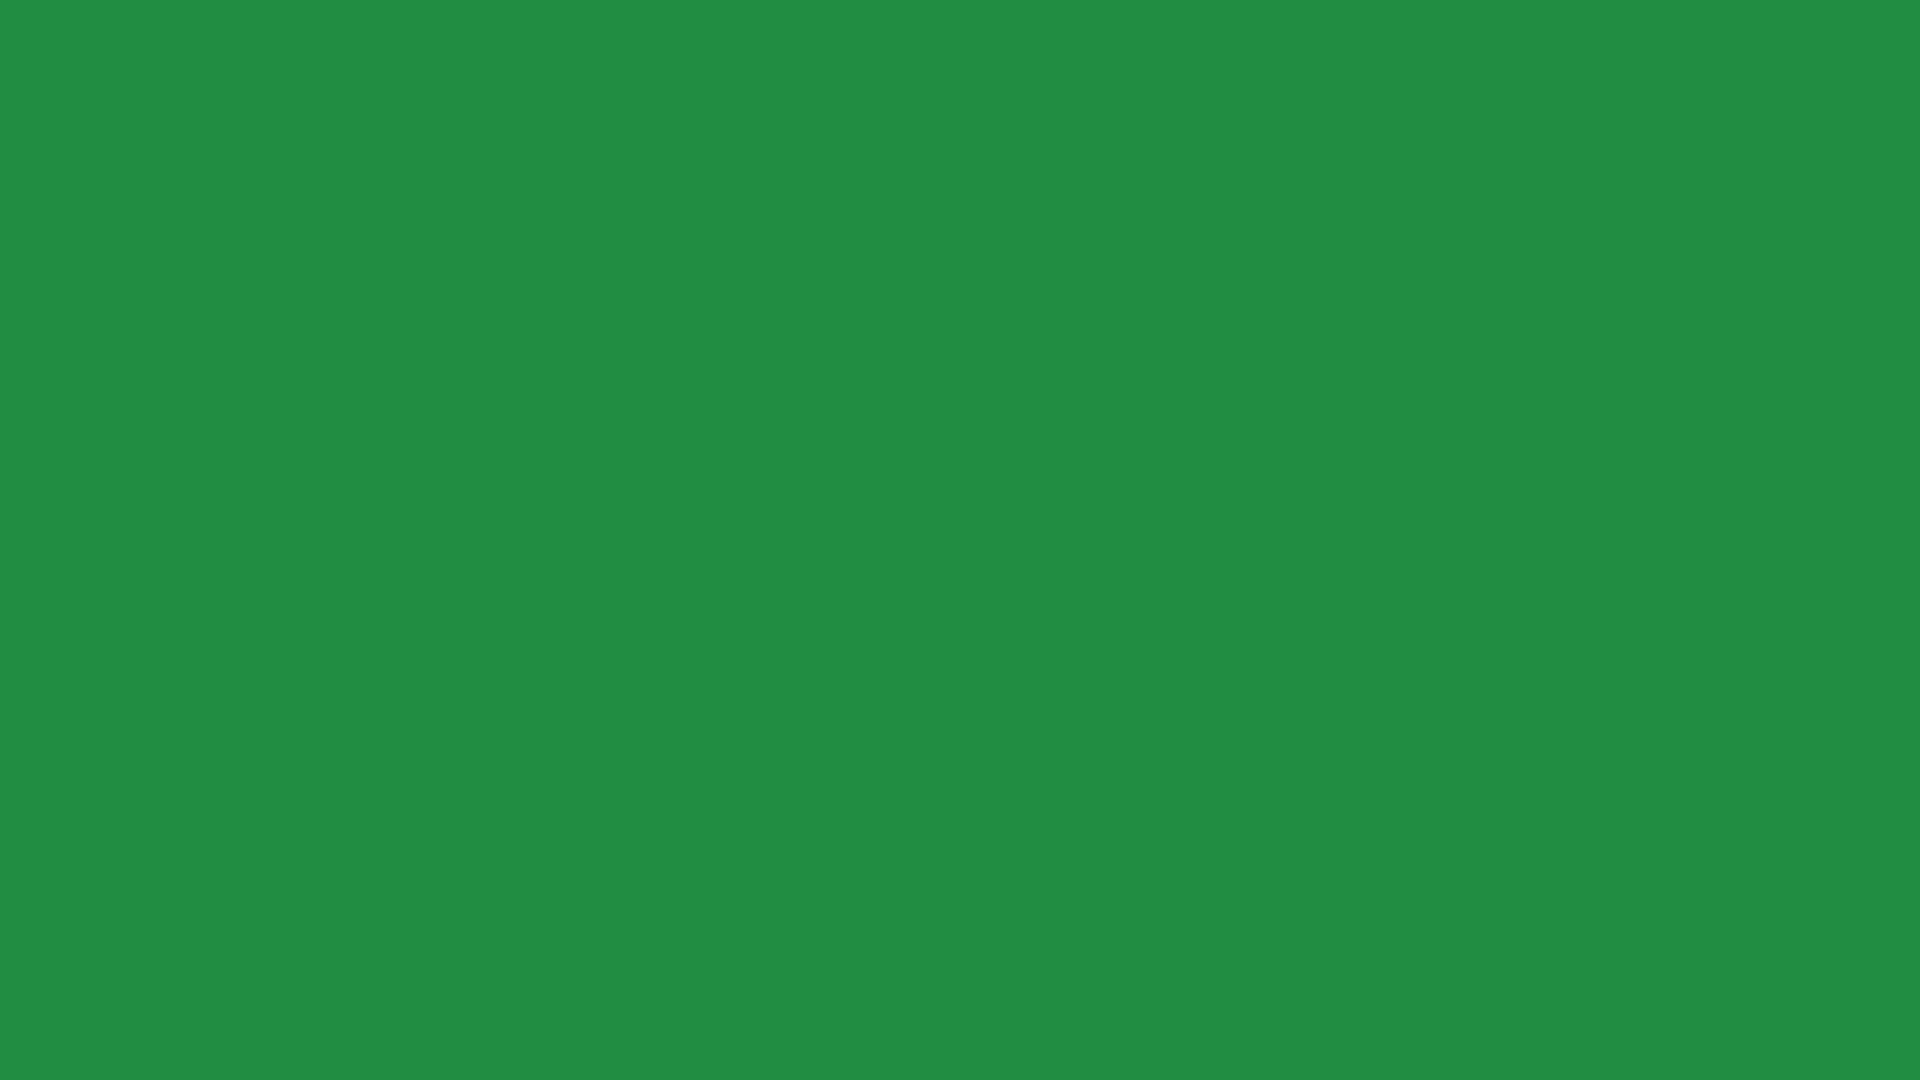 1920x1080 Nền màu xanh lá cây đồng bằng: Tải xuống miễn phí các tệp Vector, Hình ảnh, PNG, PSD